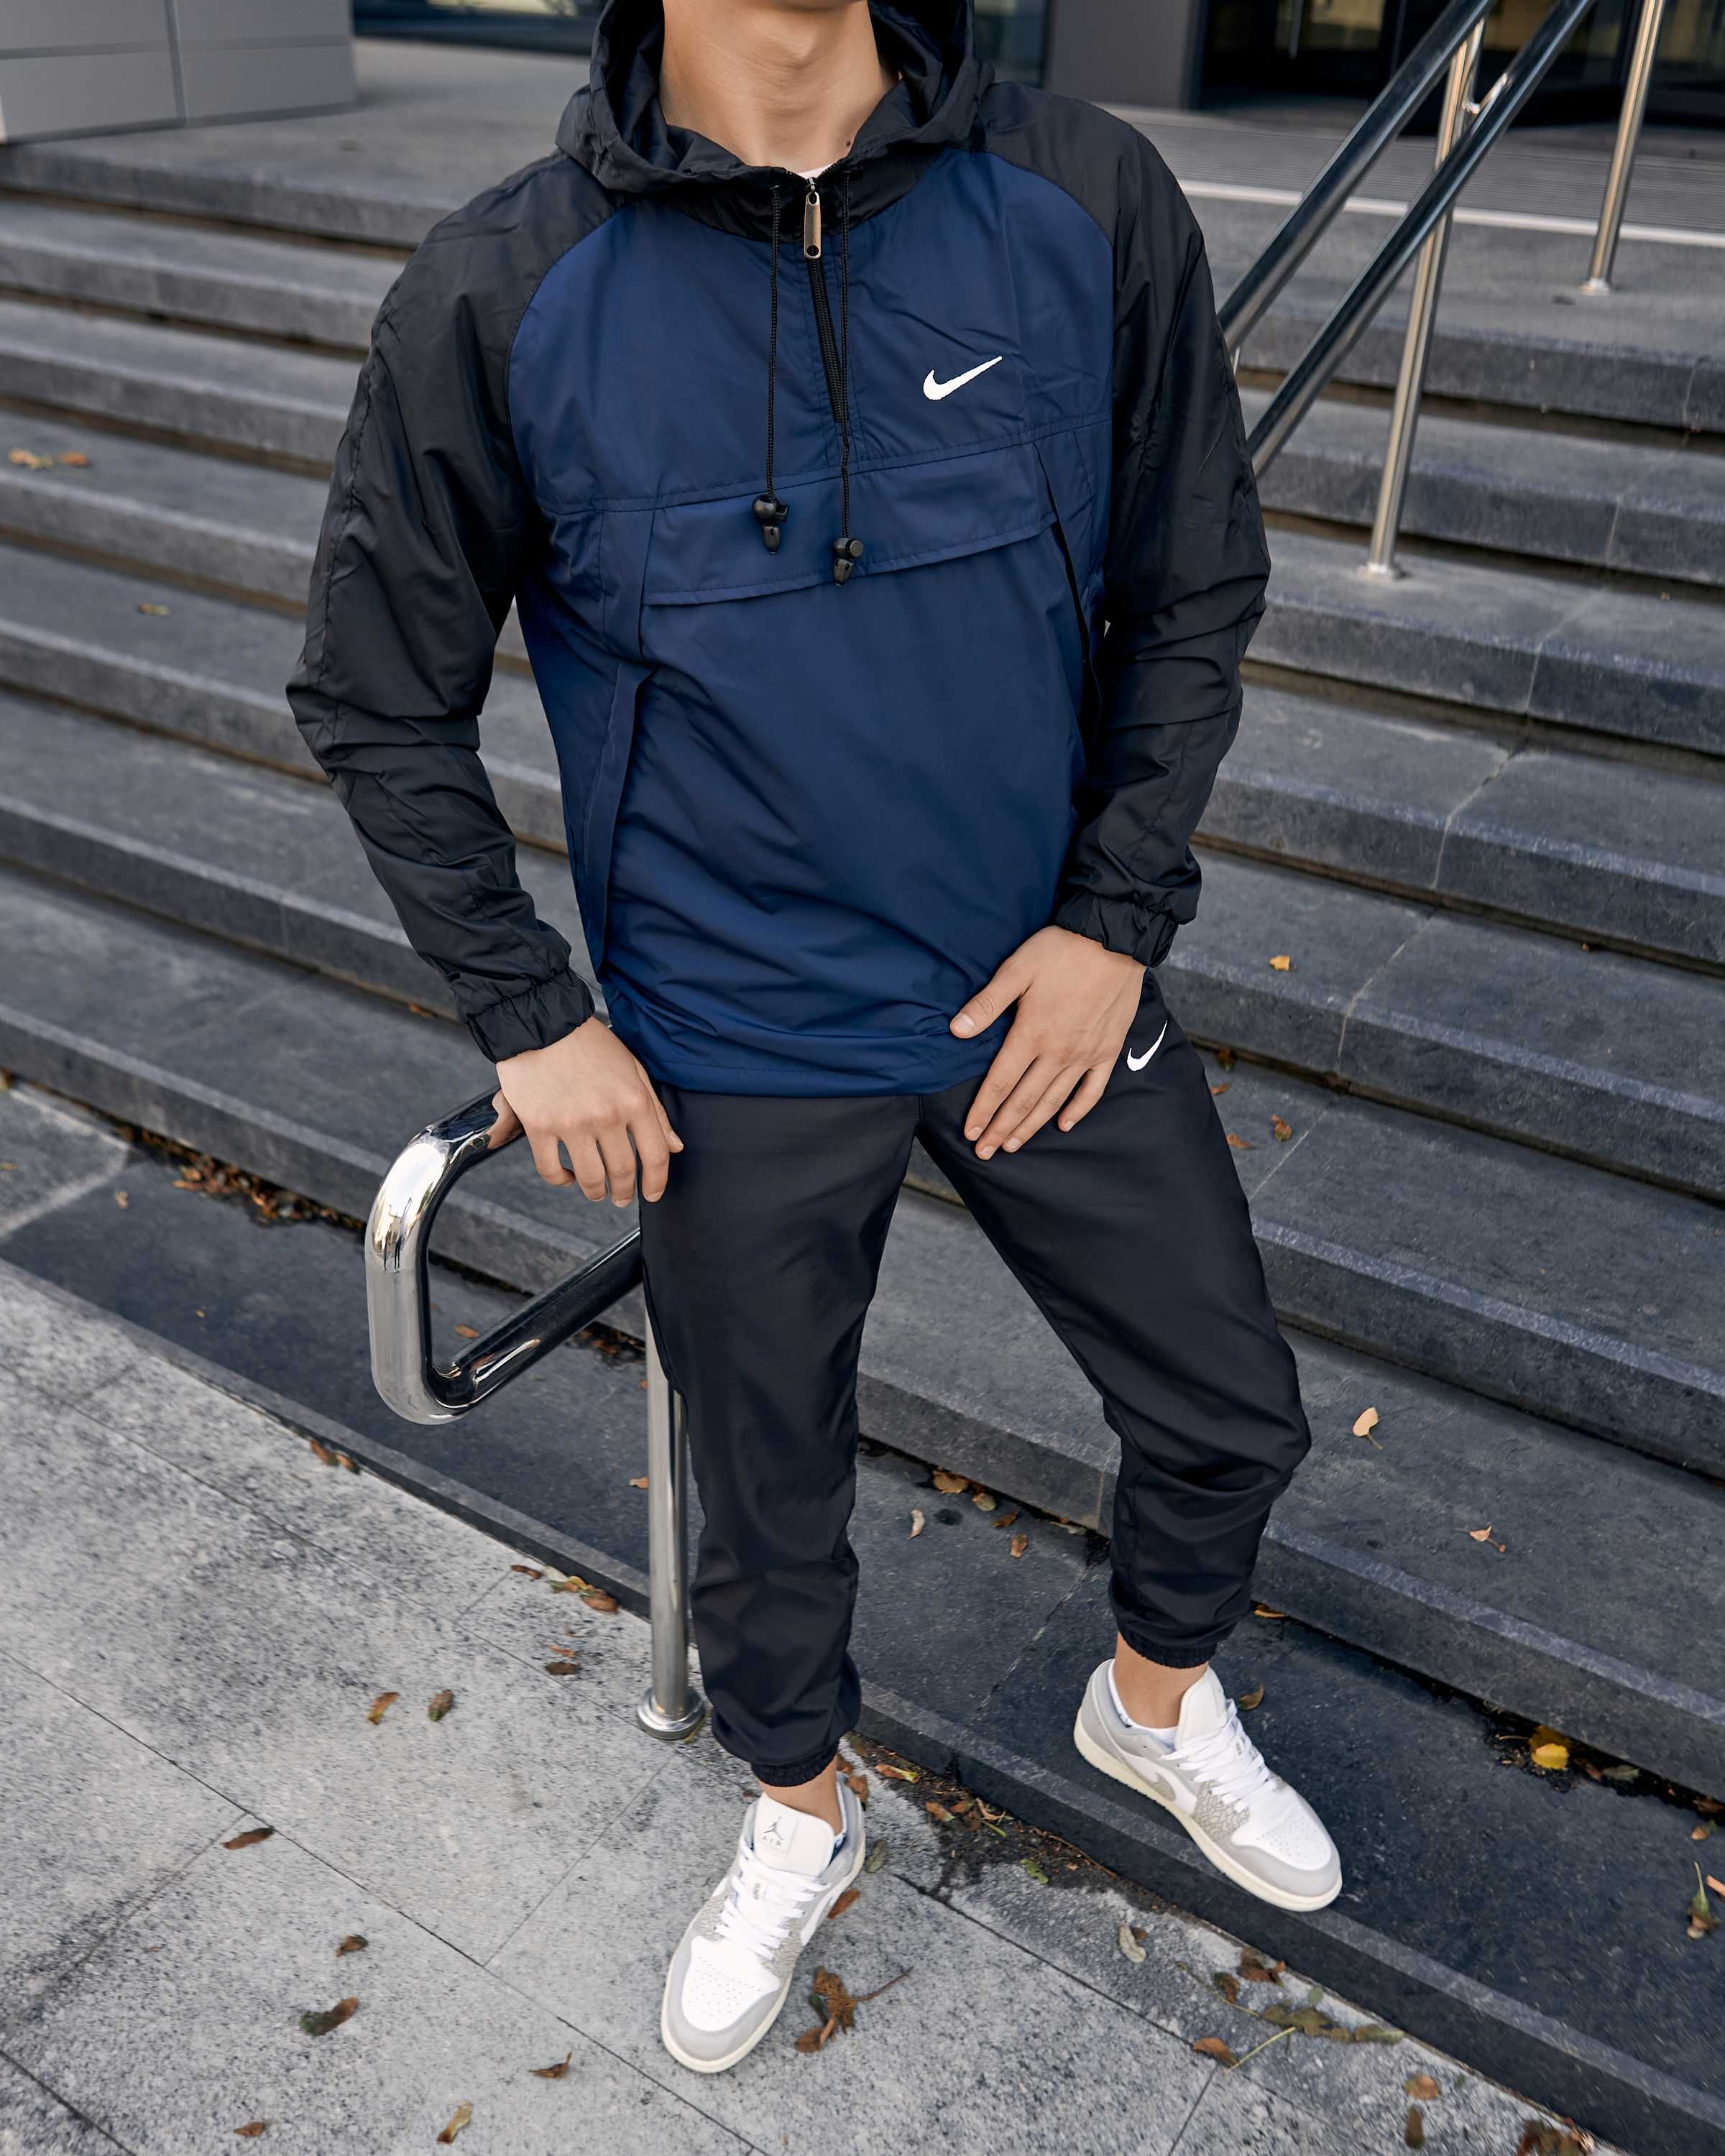 Комплект мужской Куртка Анорак Штаны Nike Спортивный костюм Найк